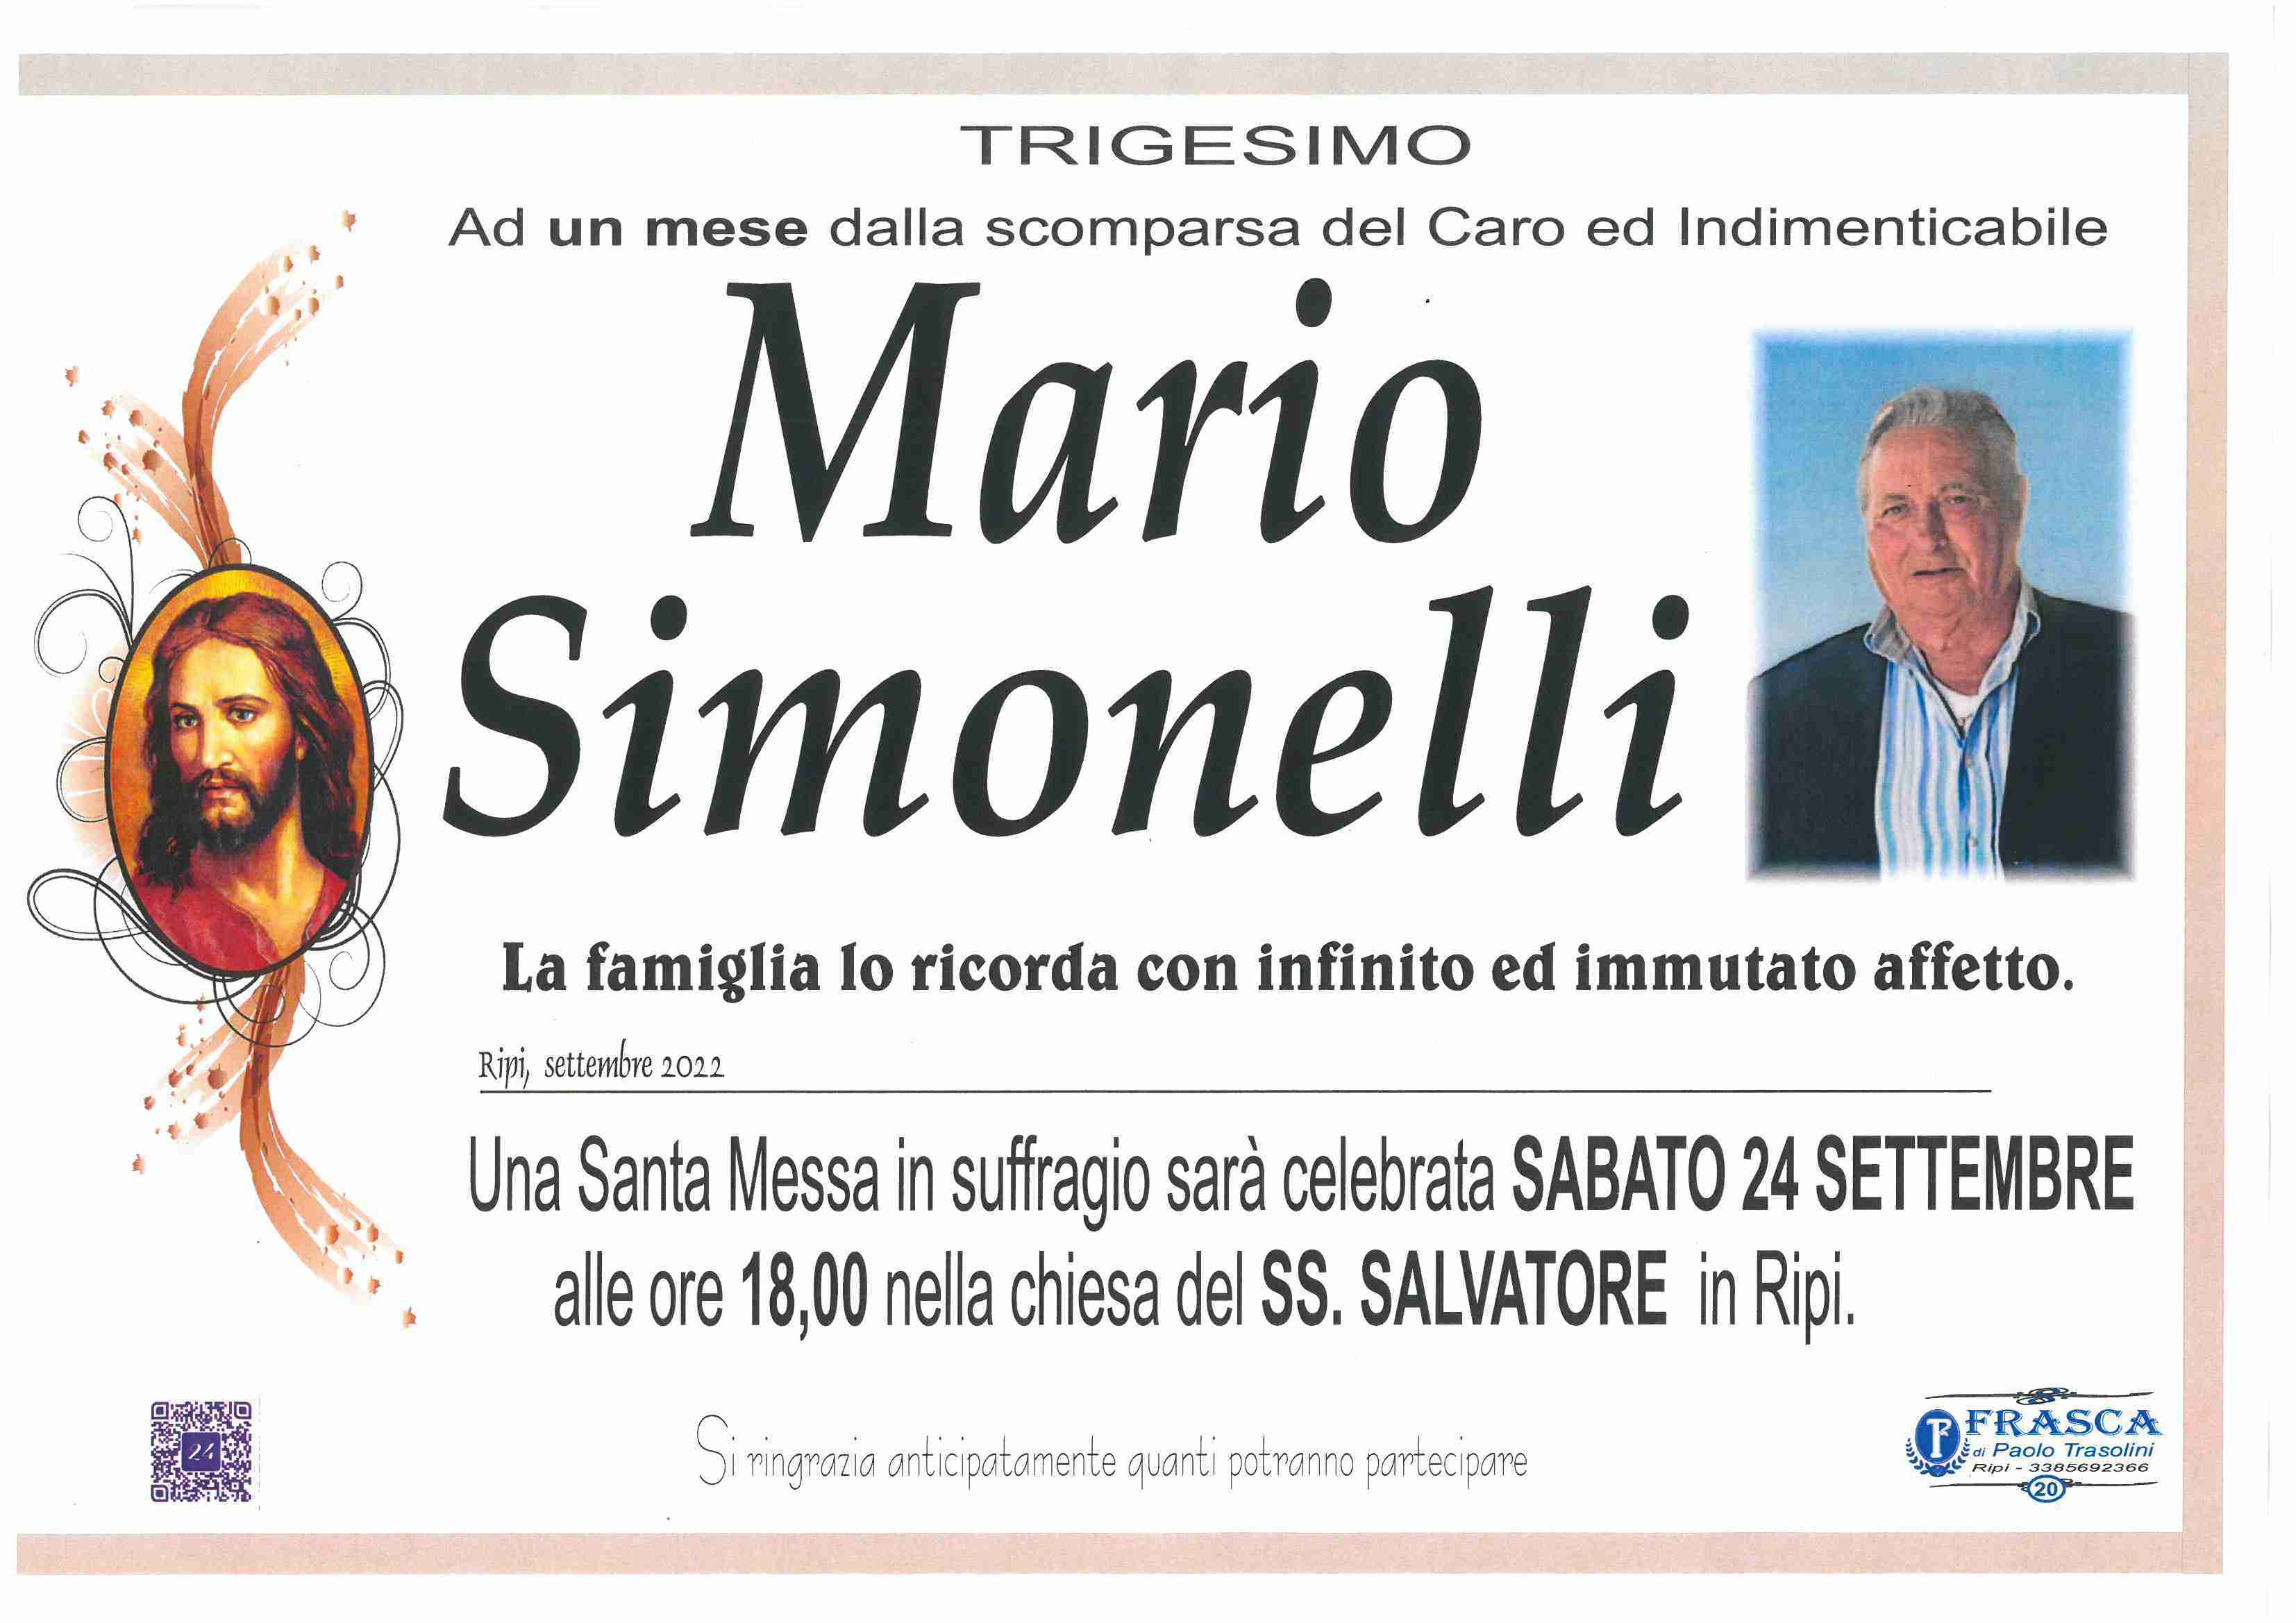 Mario Simonelli